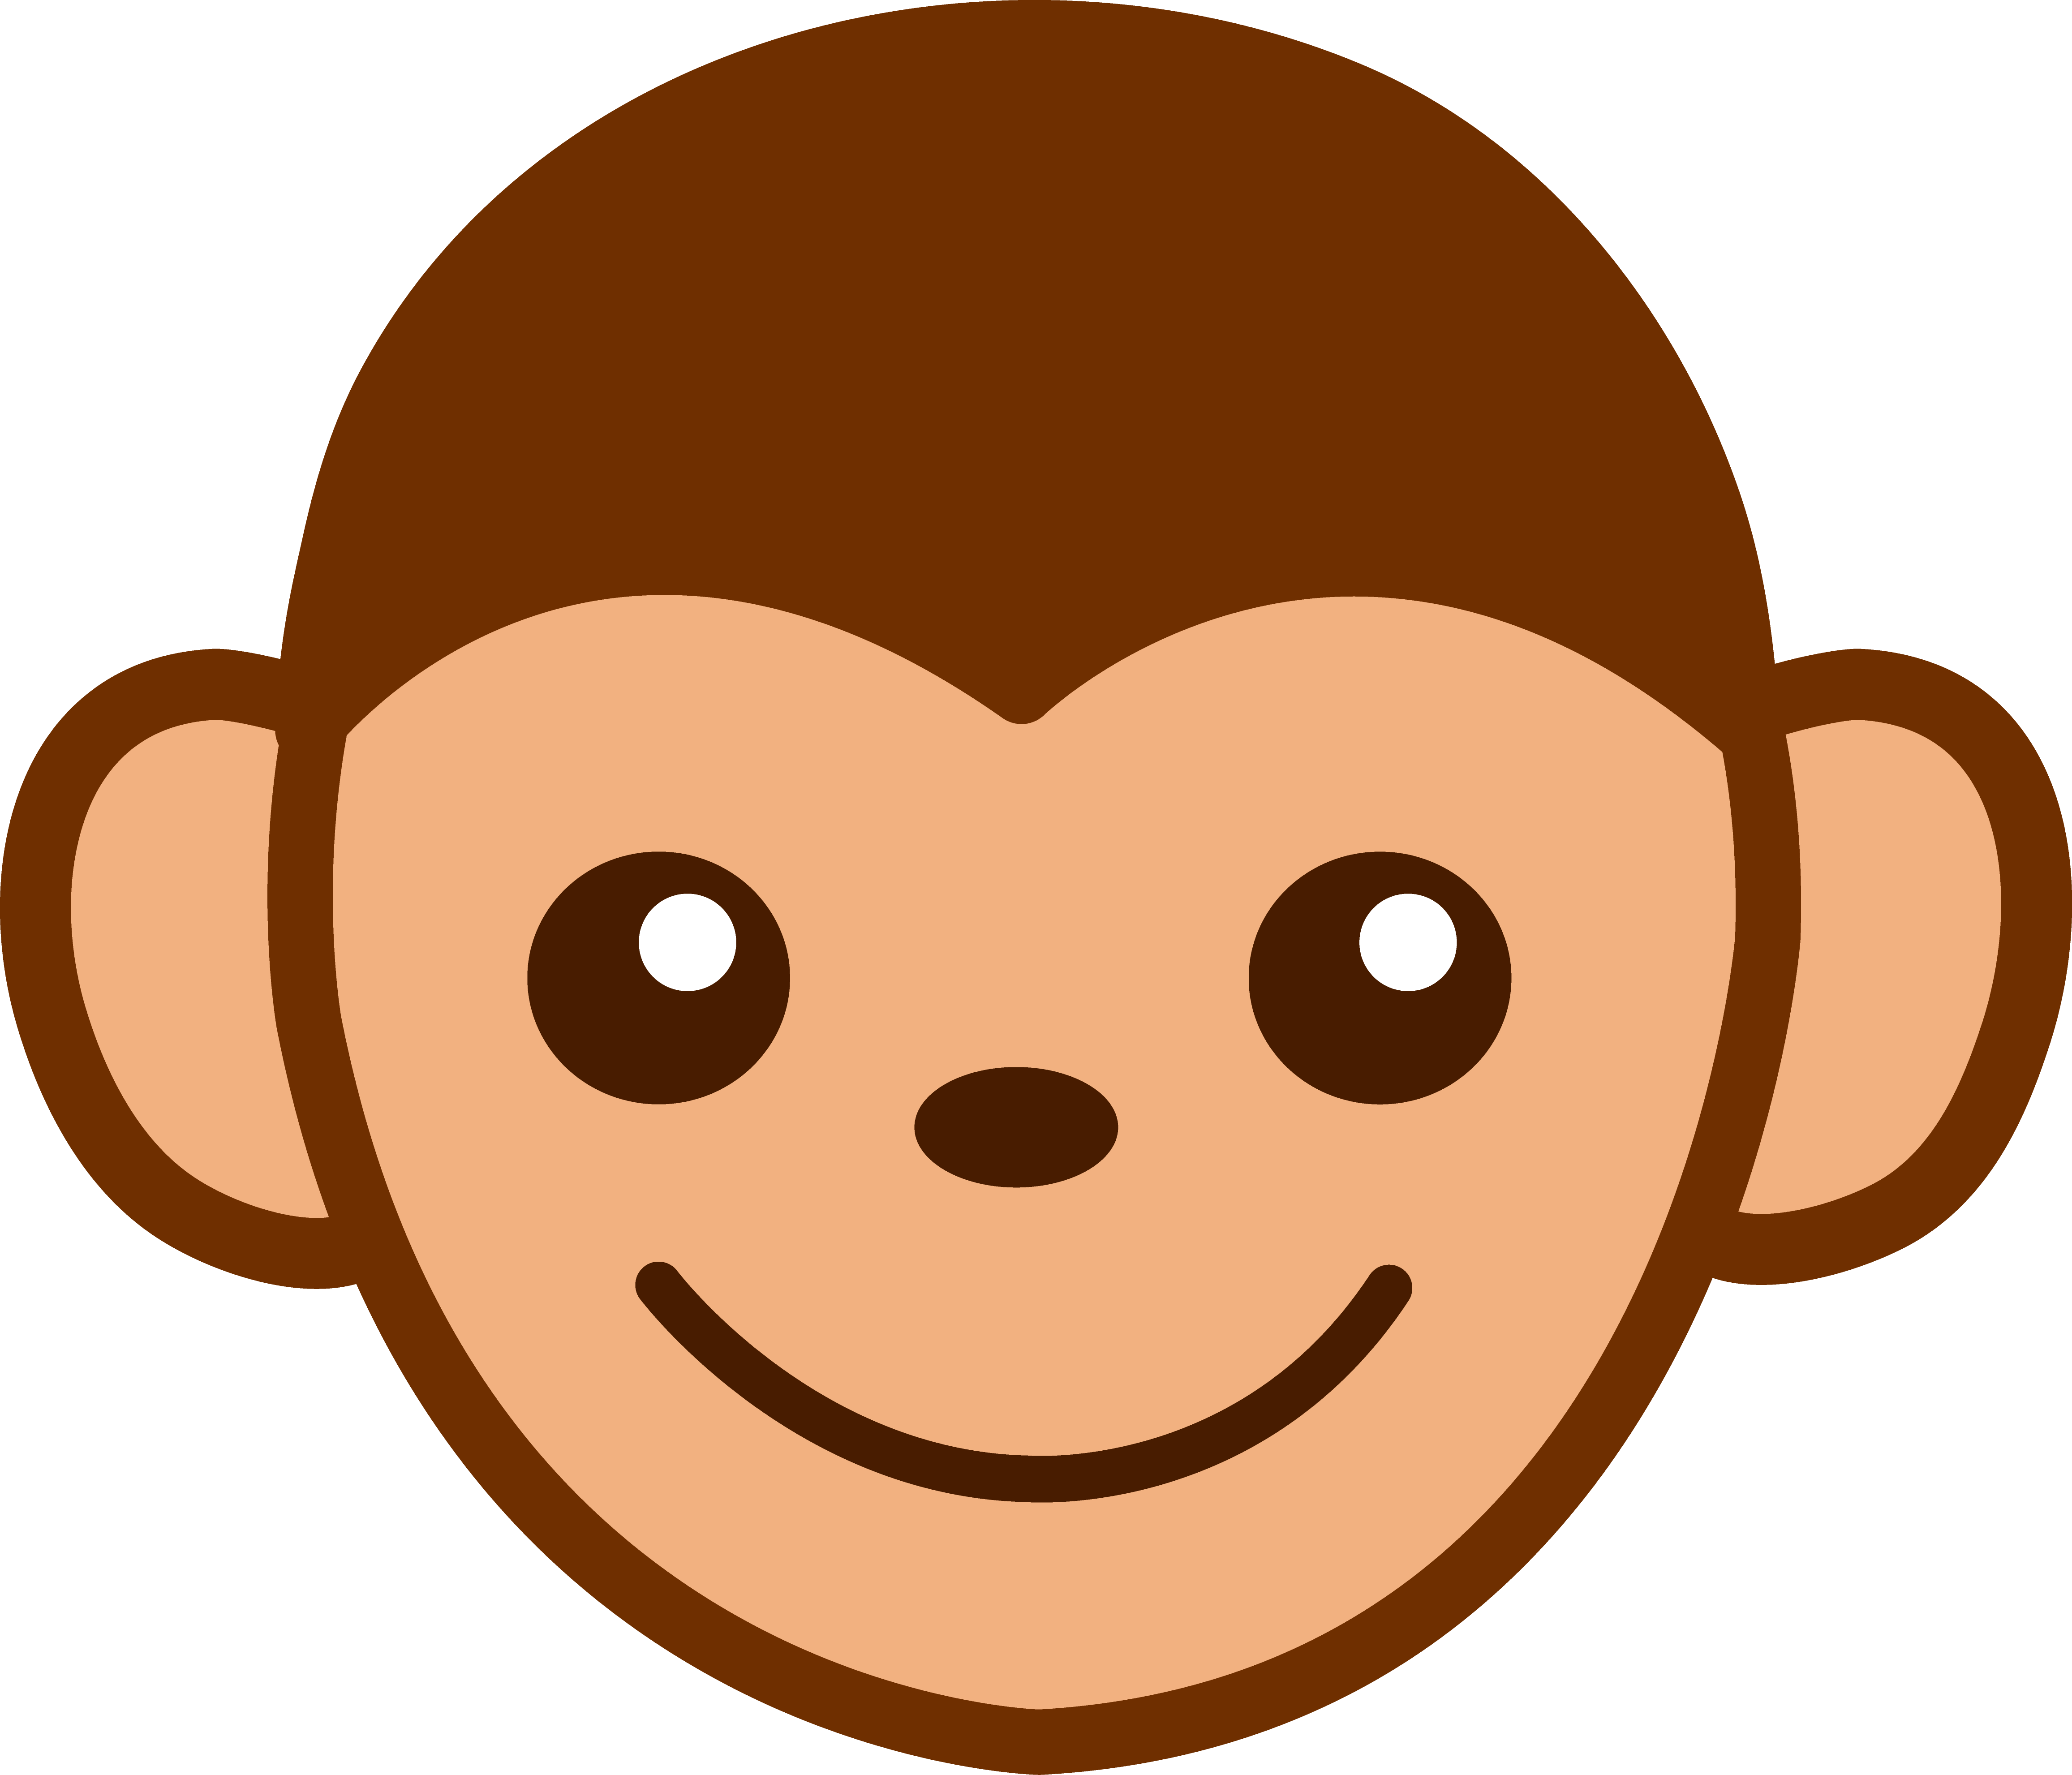 monkey animated clipart - photo #48